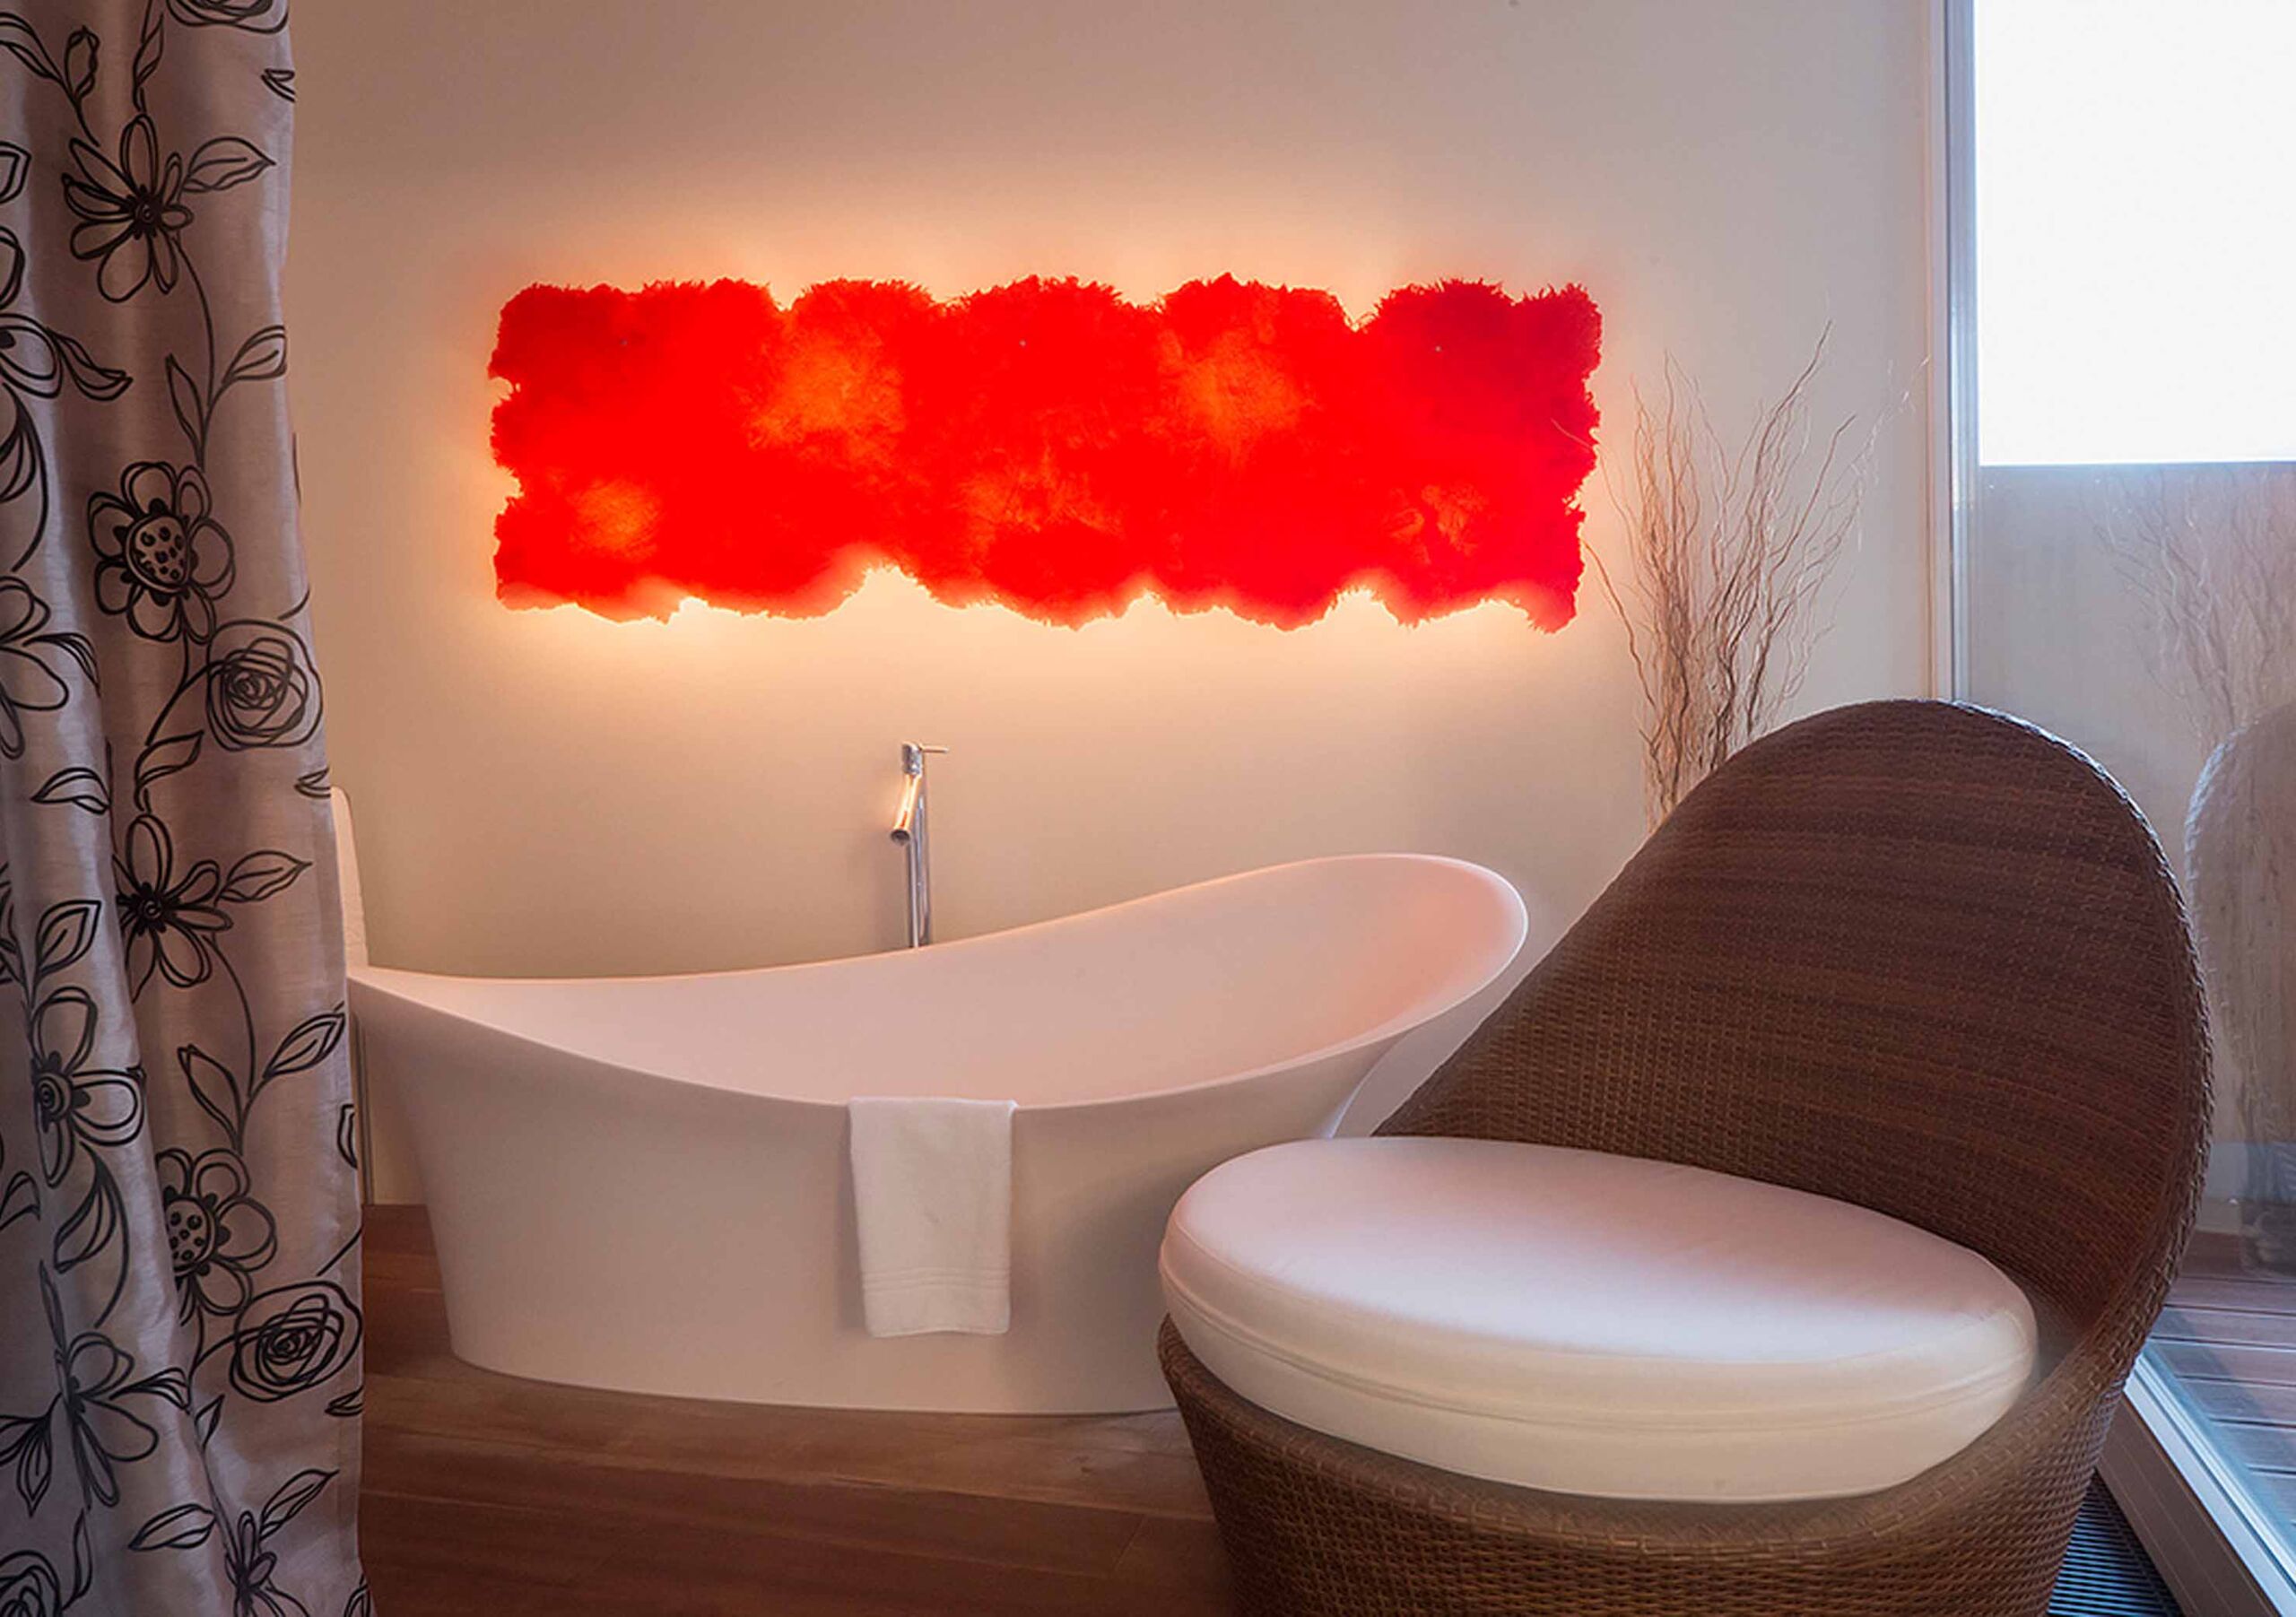 Frei stehende offene Designbadewanne mit schöner roten Wandleuchte und gemütlichen Wellness Sessel